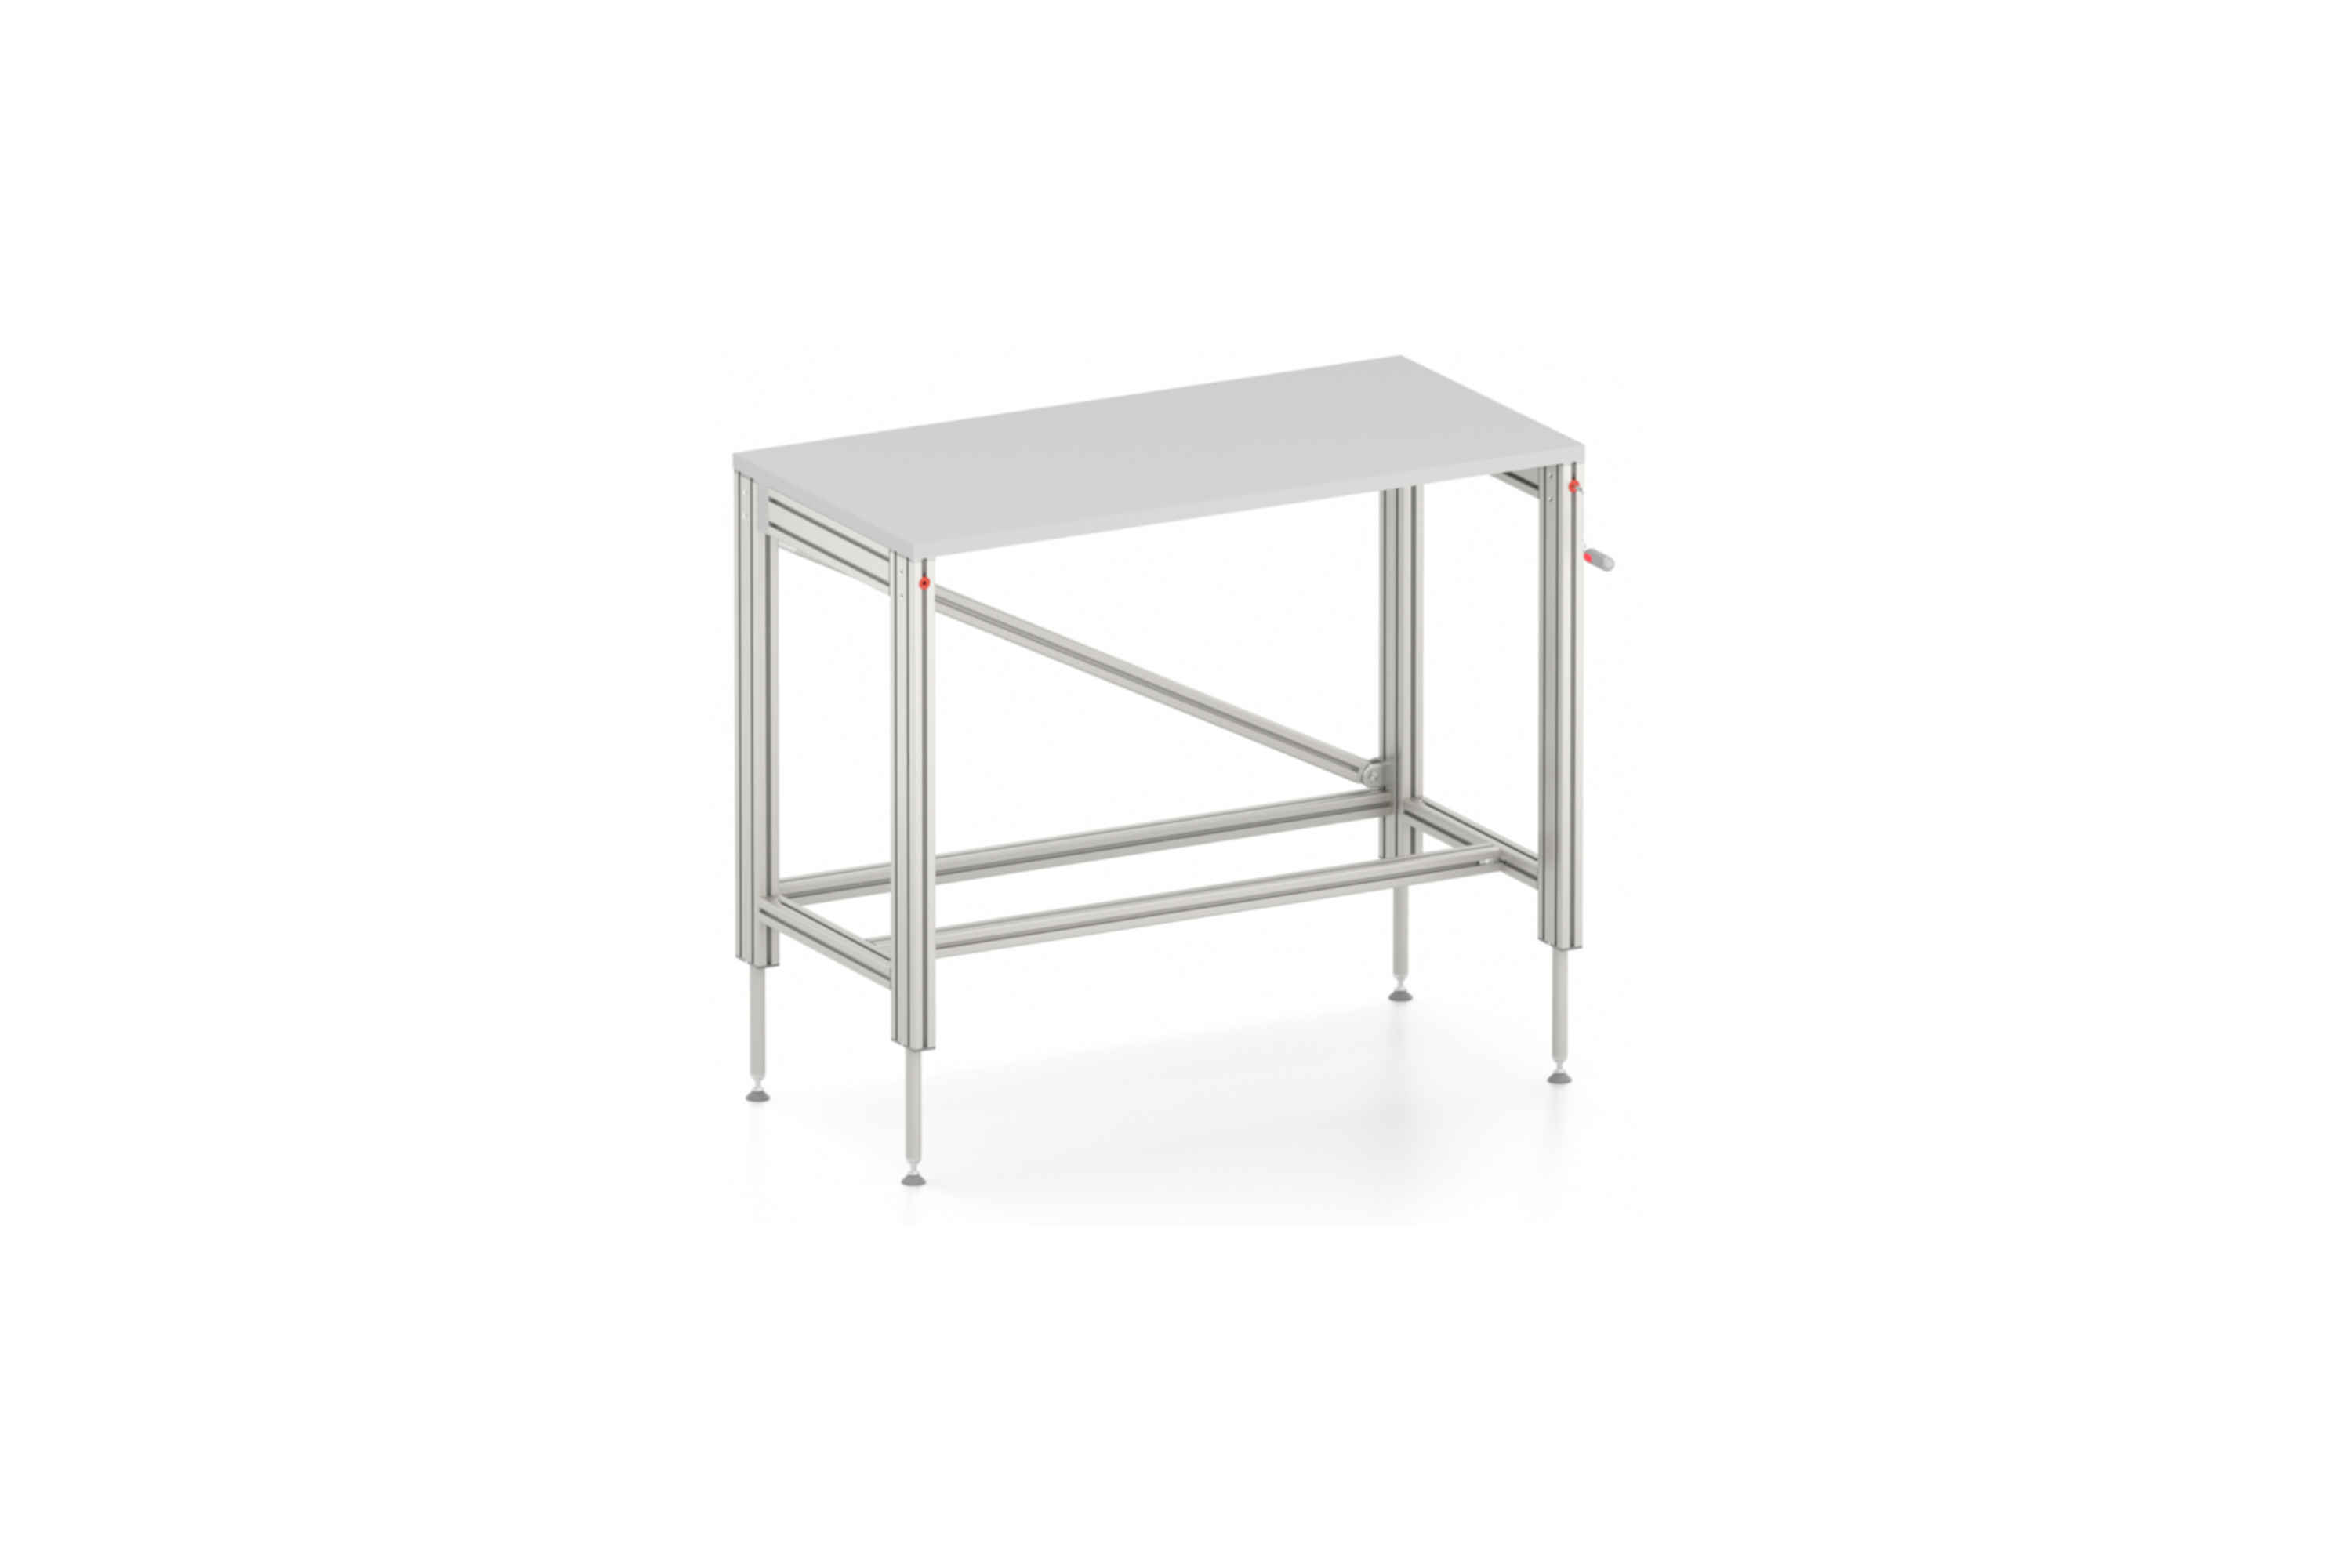 Mesa de altura regulable manualmente Table, Economy 8 80x40 K - modelo básico